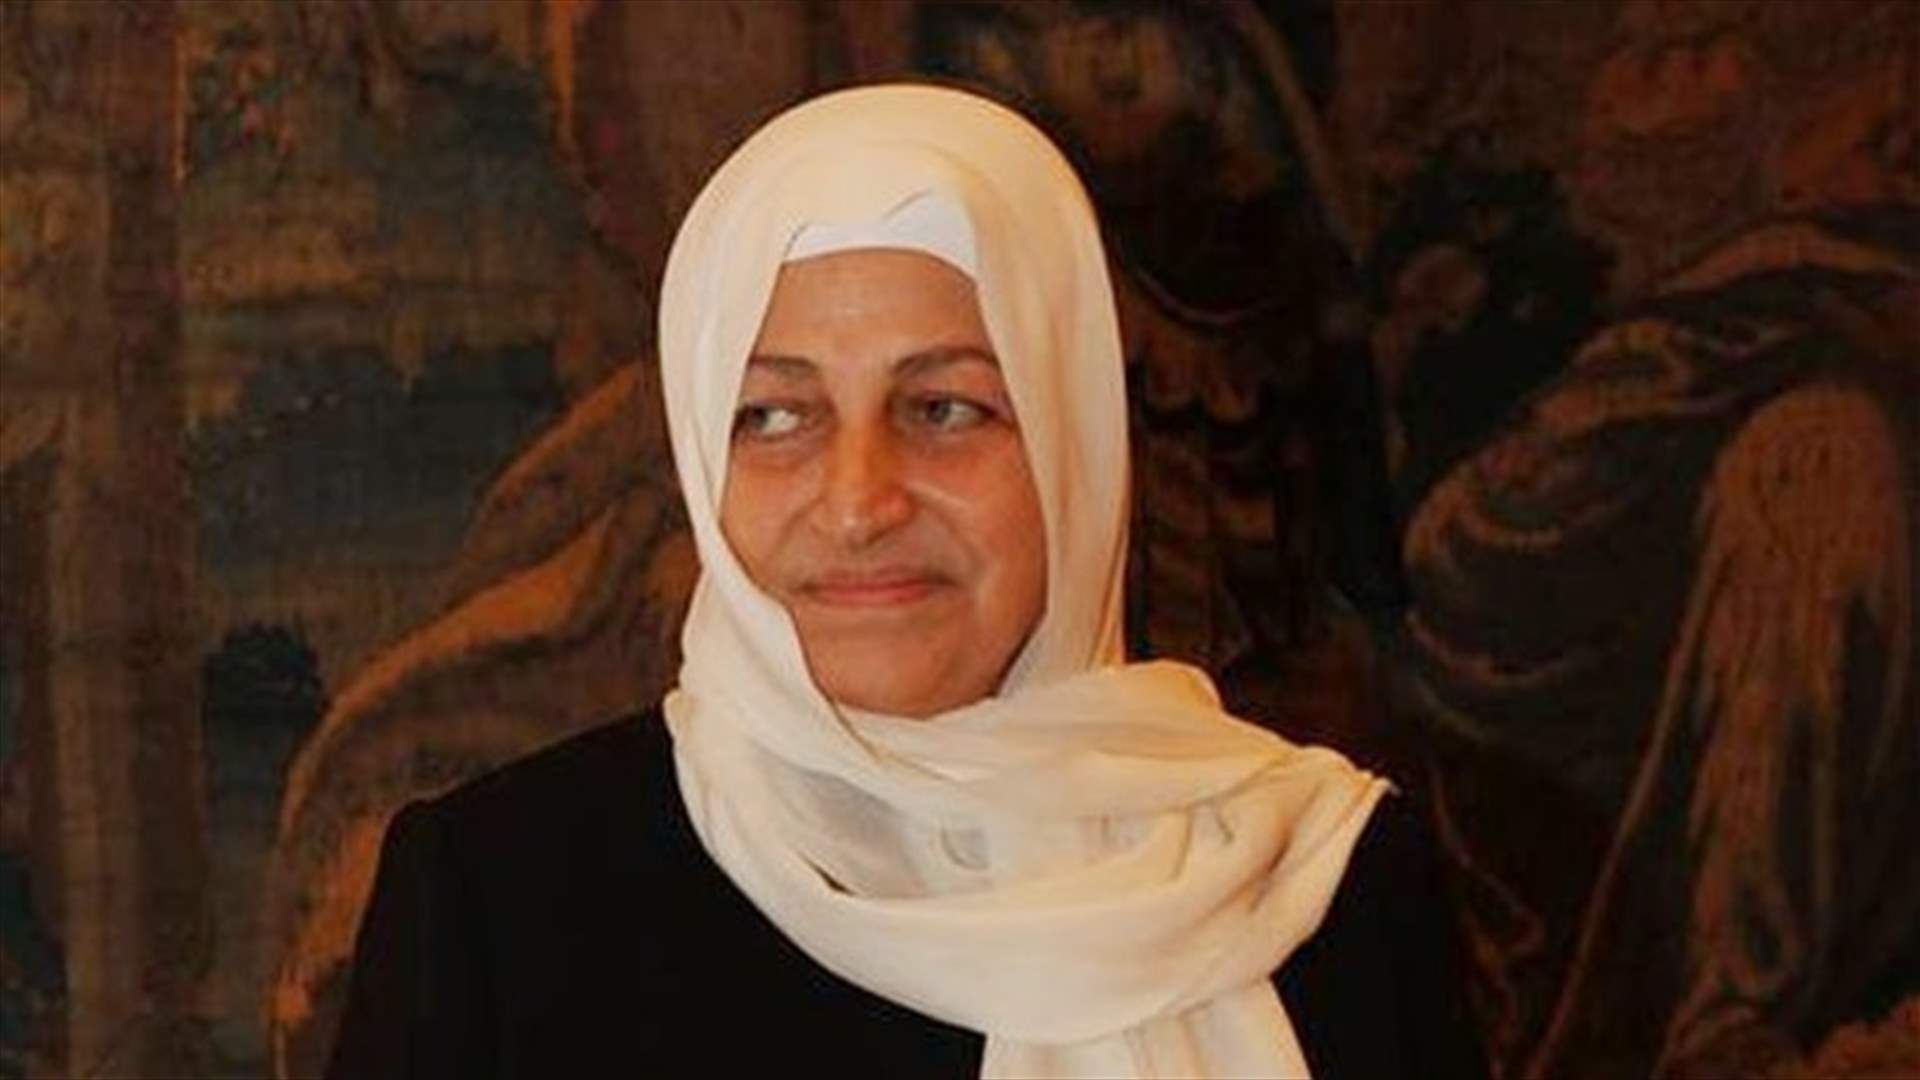 وزارة الداخلية تنفي الأخبار عن محاولة اغتيال النائب بهية الحريري